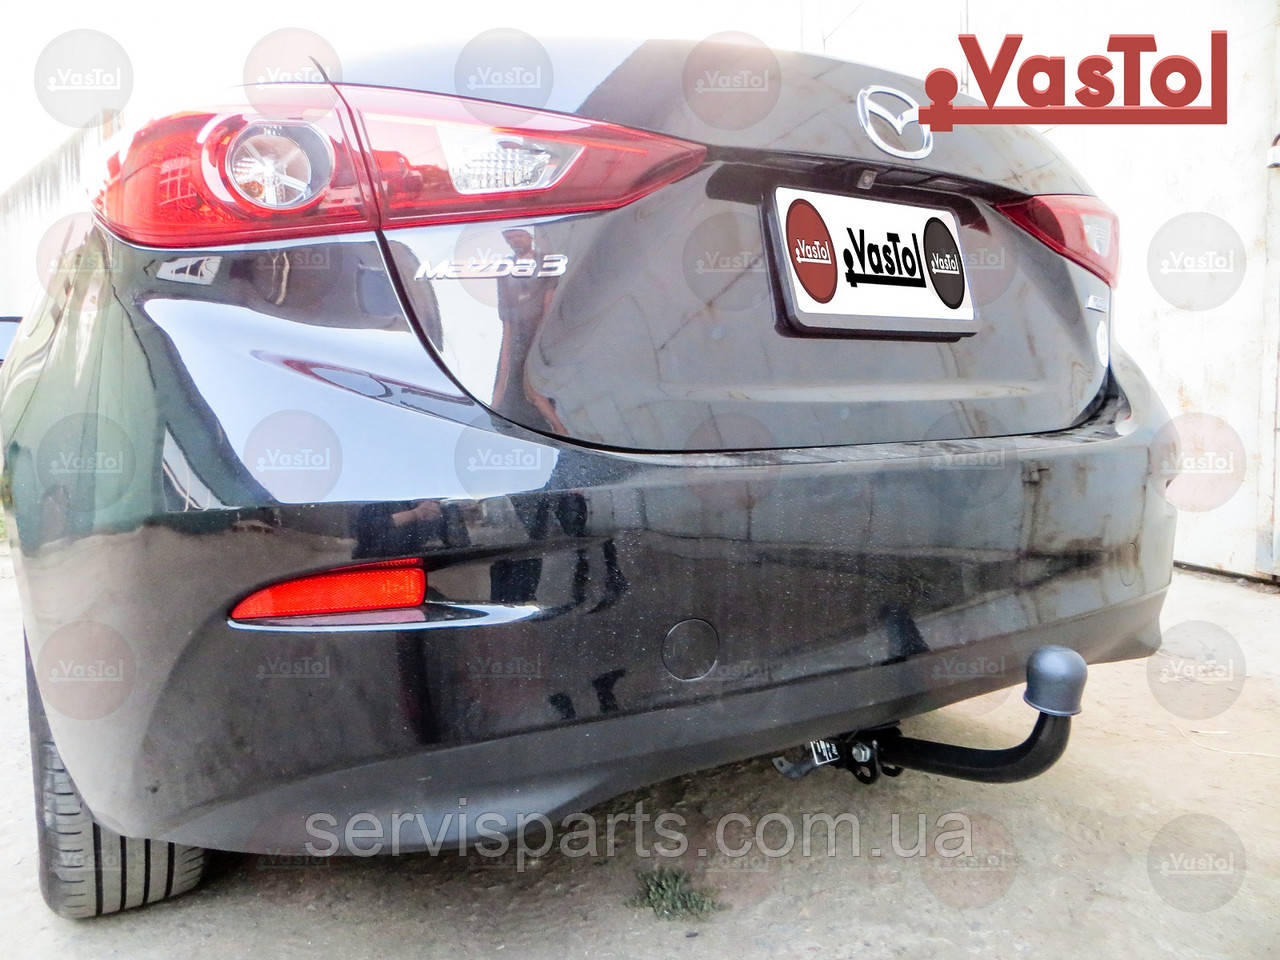 Український фаркоп на Mazda 3 седан 2013-2018 без підрізання бампера